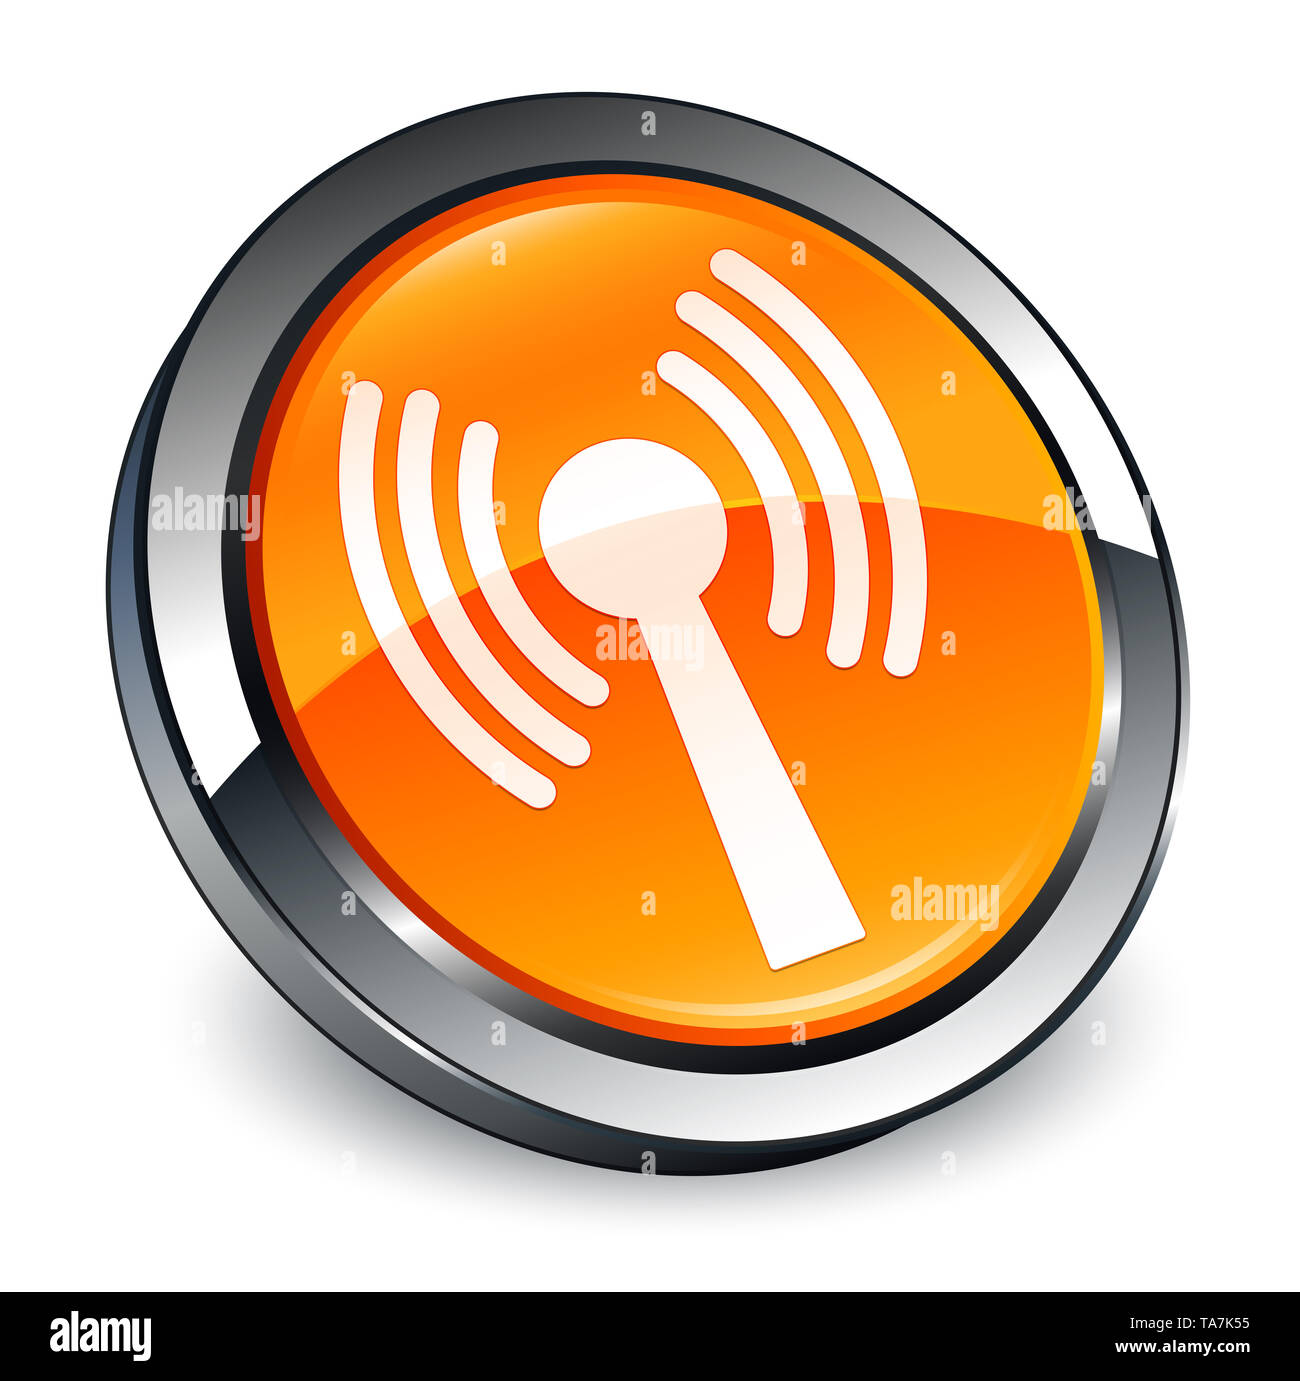 L'icône de réseau local sans fil isolé sur bouton rond orange 3d abstract illustration Banque D'Images